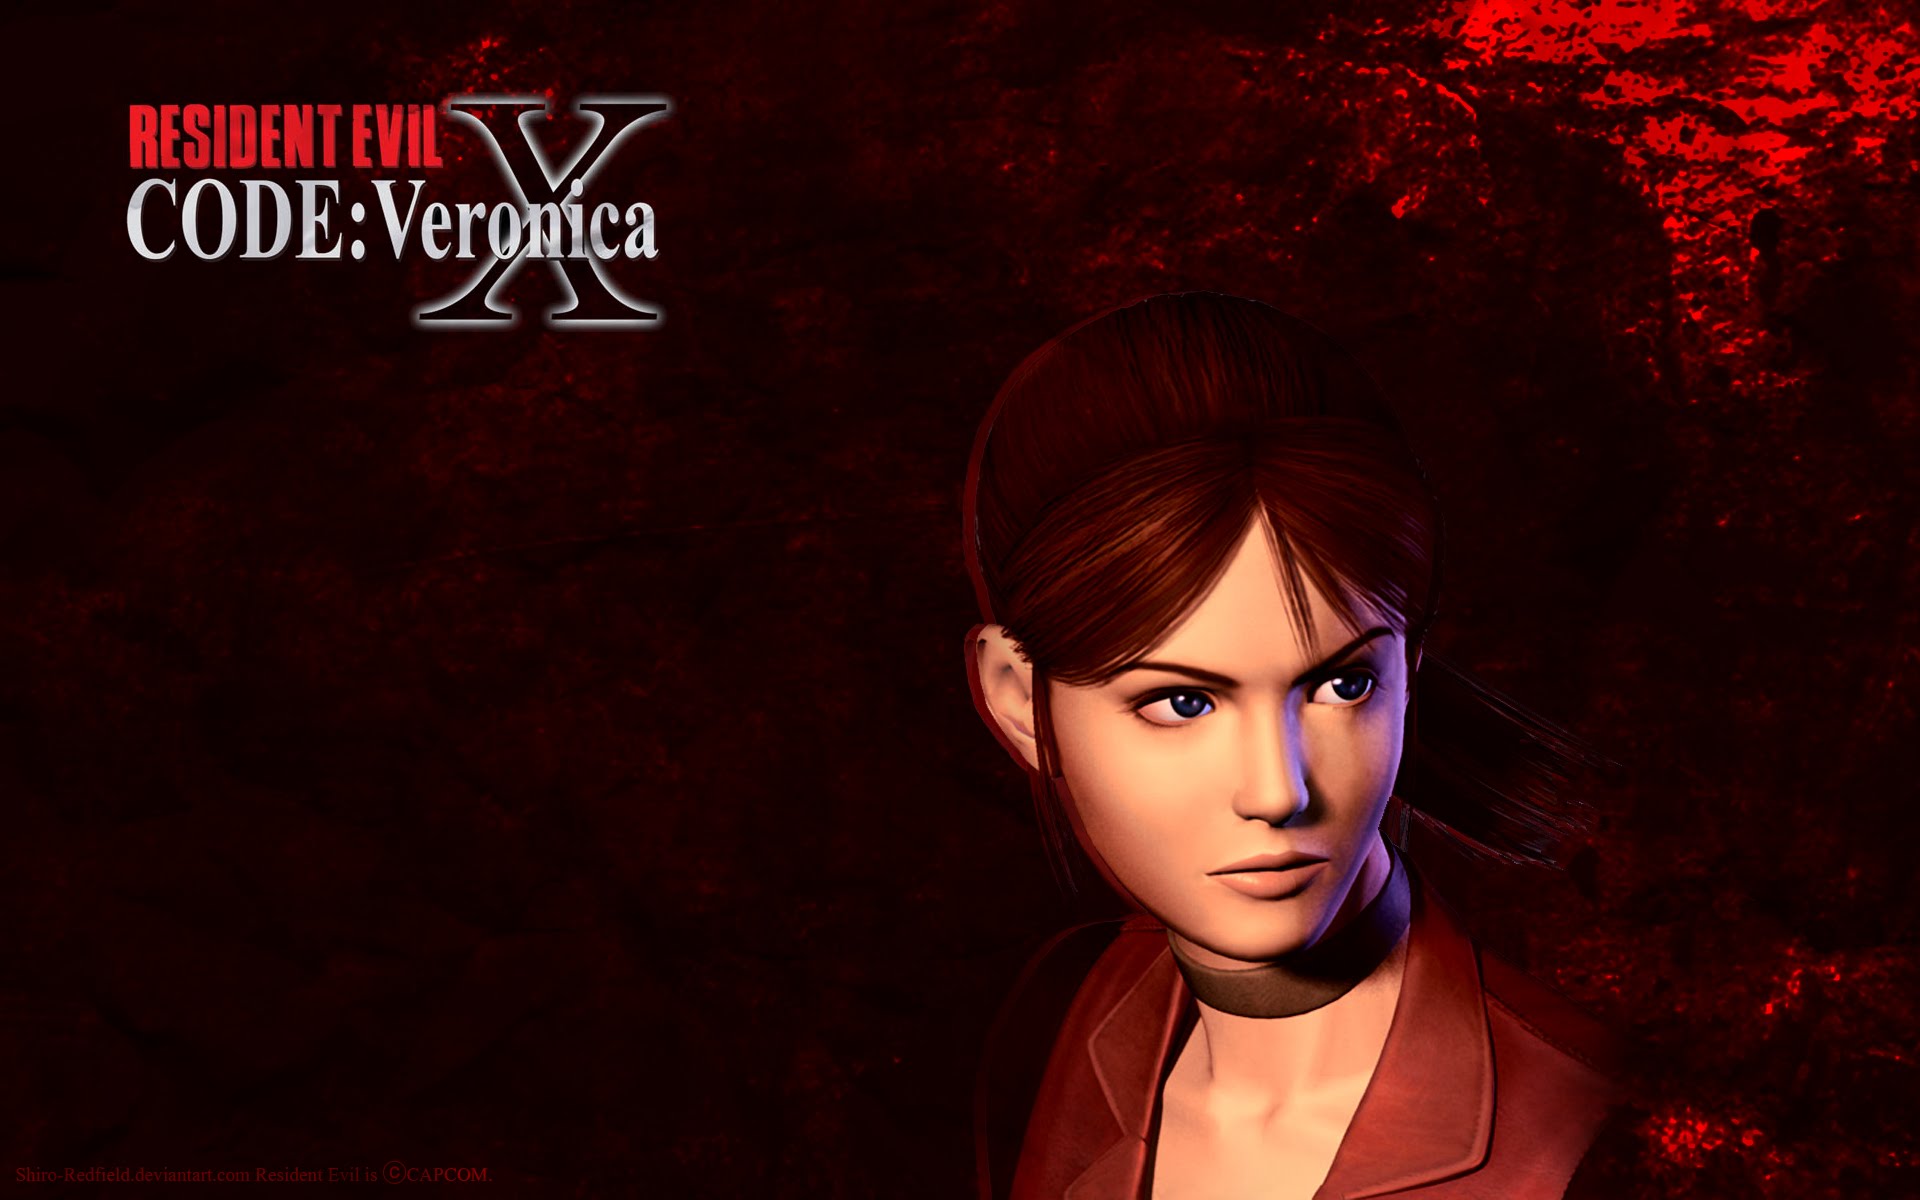 Resident Evil CODE:Veronica, Resident Evil